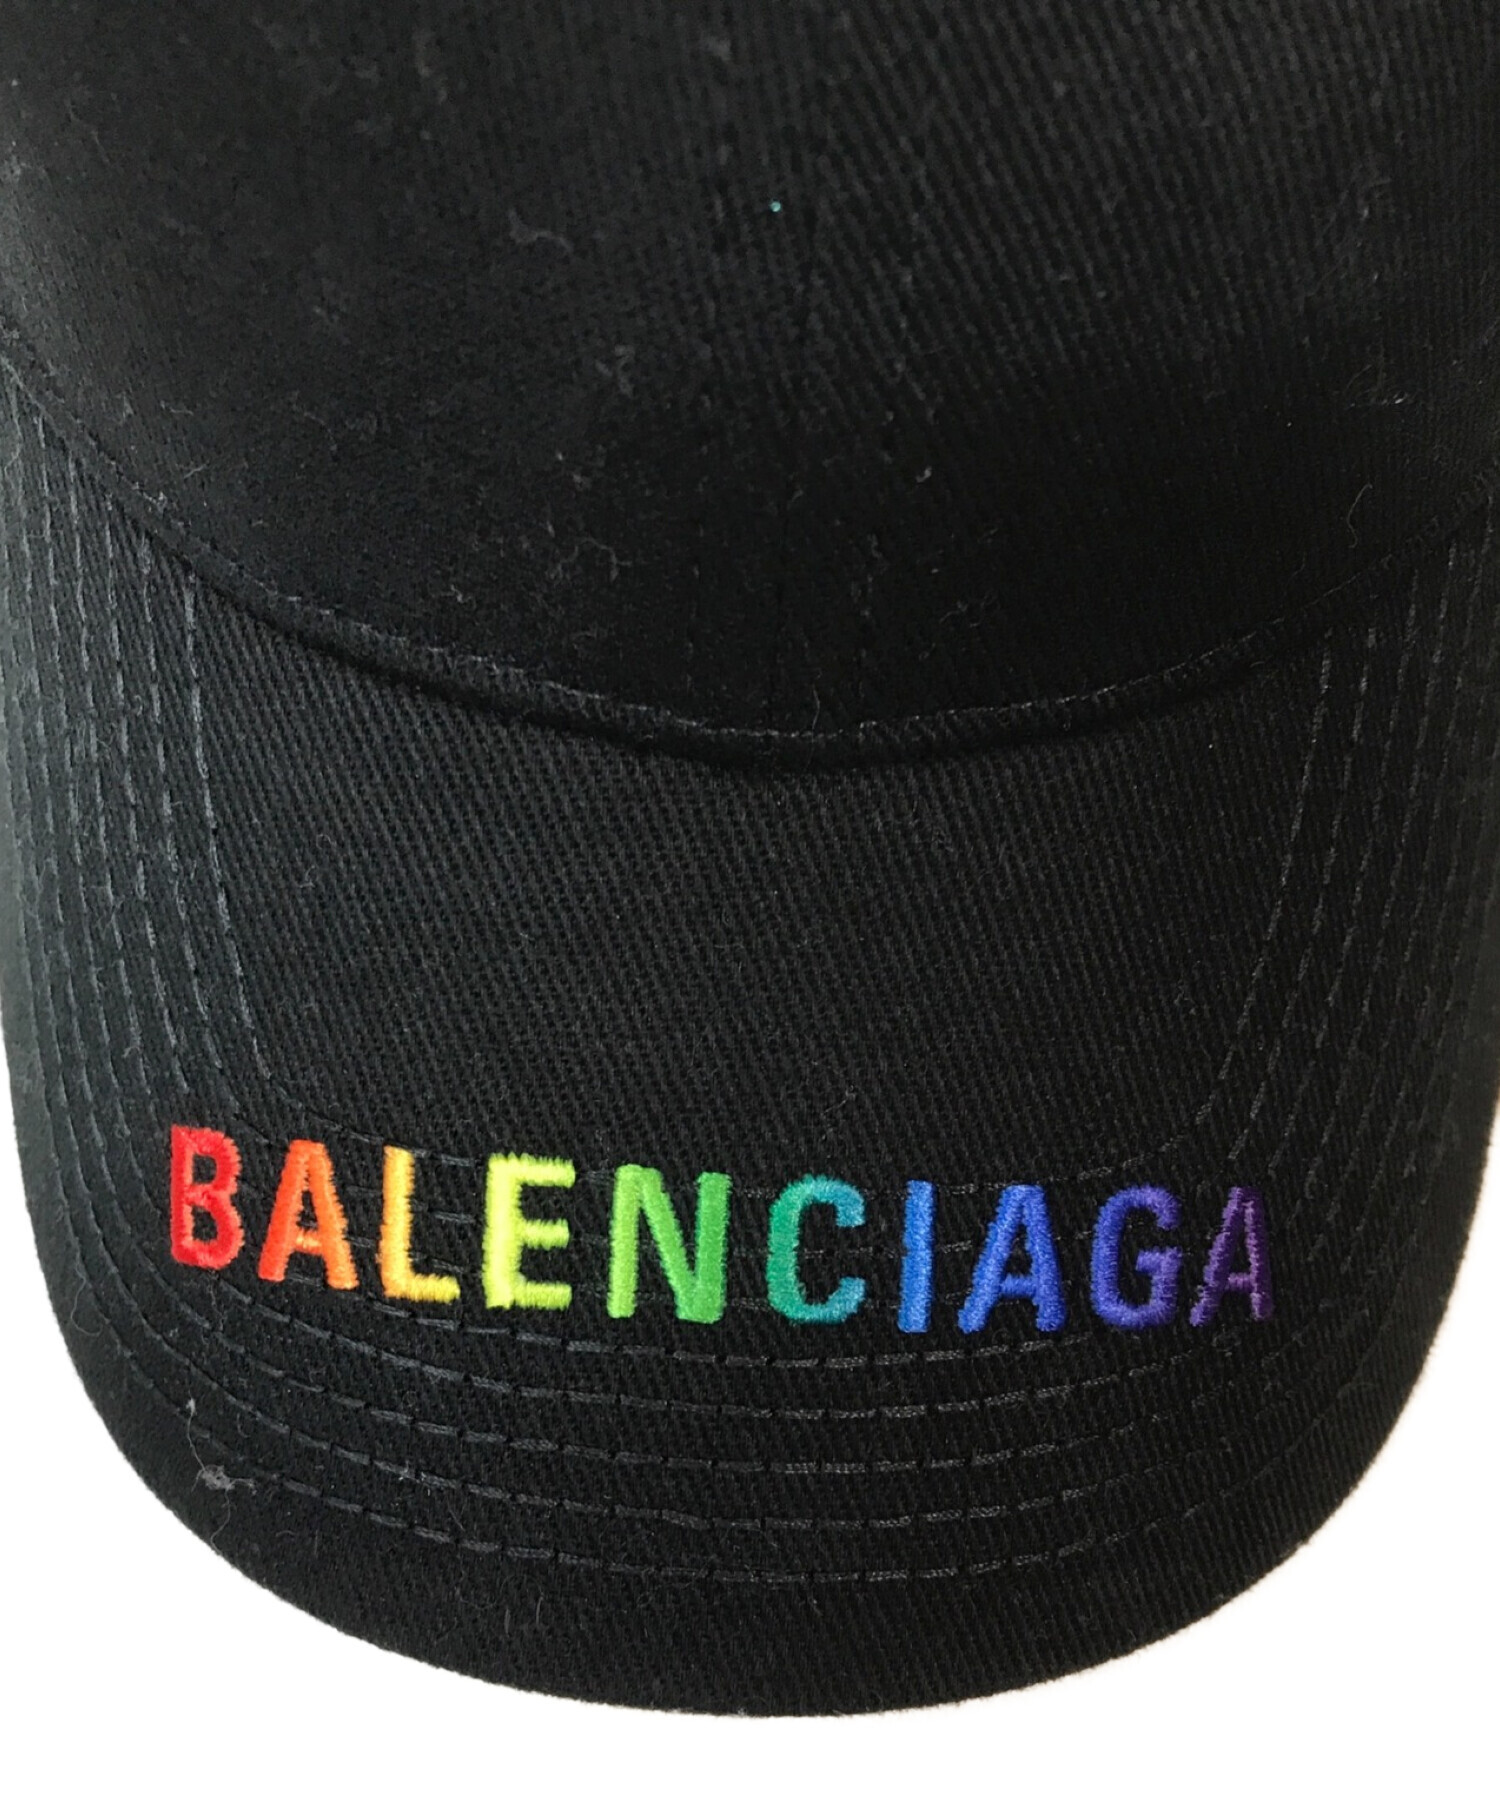 レインボーキャップ帽子BALENCIAGA バレンシアガ レインボー キャップ